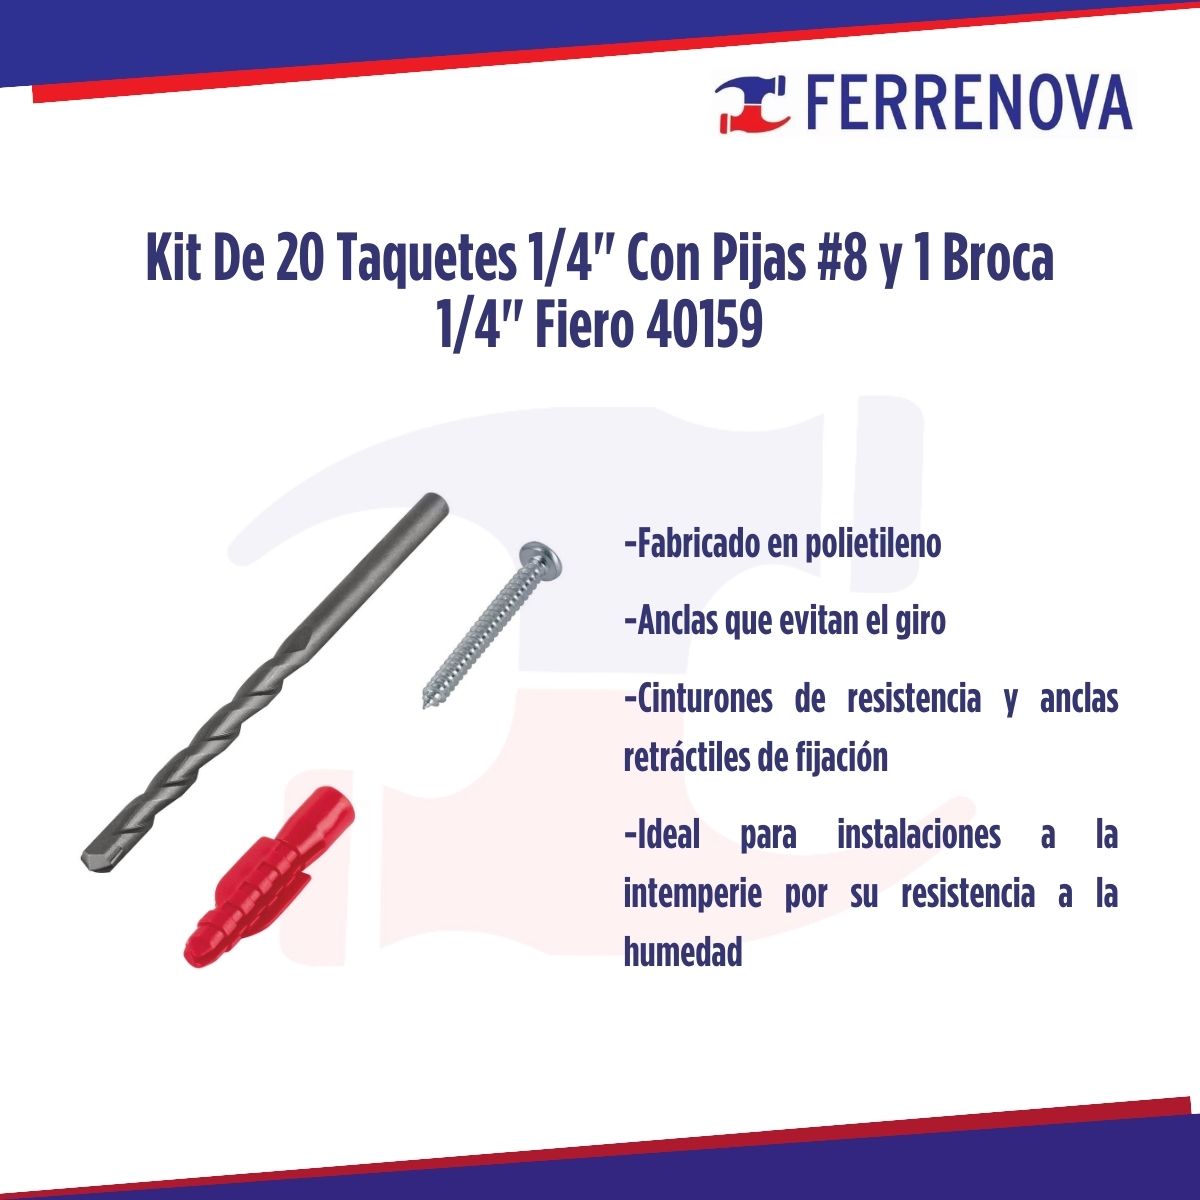 Kit De 20 Taquetes 1/4" Con Pijas #8 Y 1 Broca 1/4" Fiero 40159